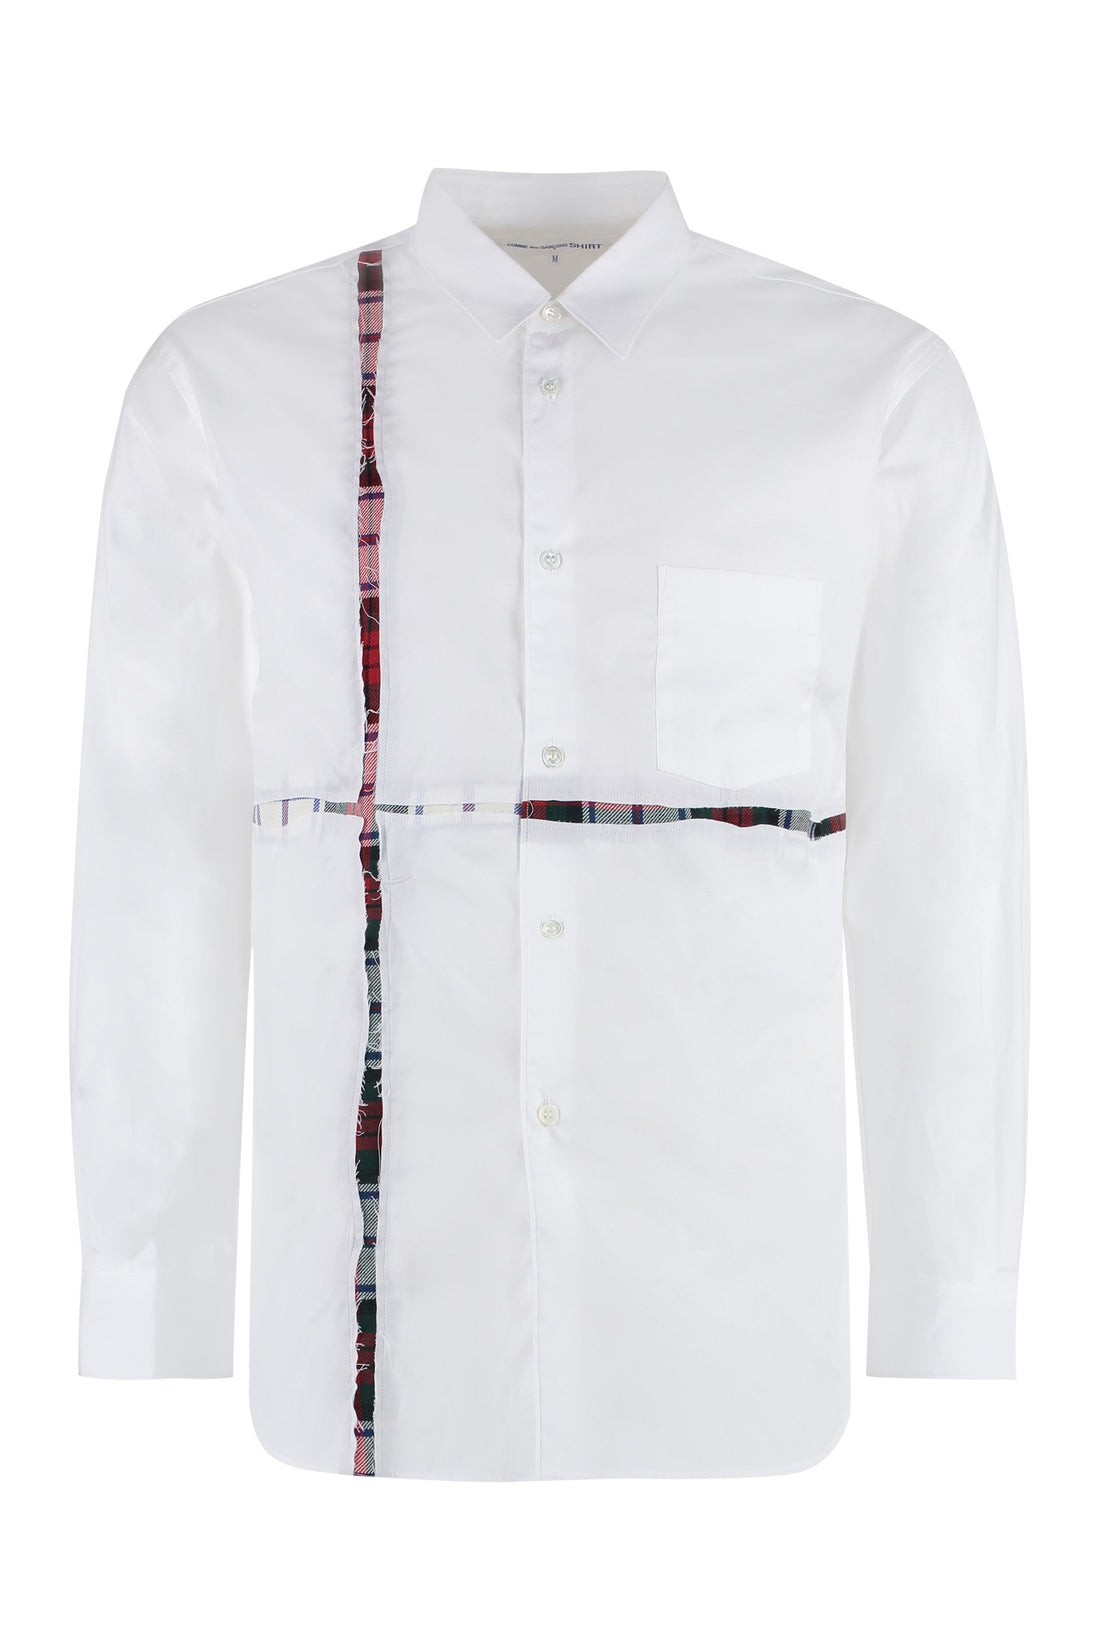 Comme des Garçons SHIRT-OUTLET-SALE-Long sleeve cotton blend shirt-ARCHIVIST